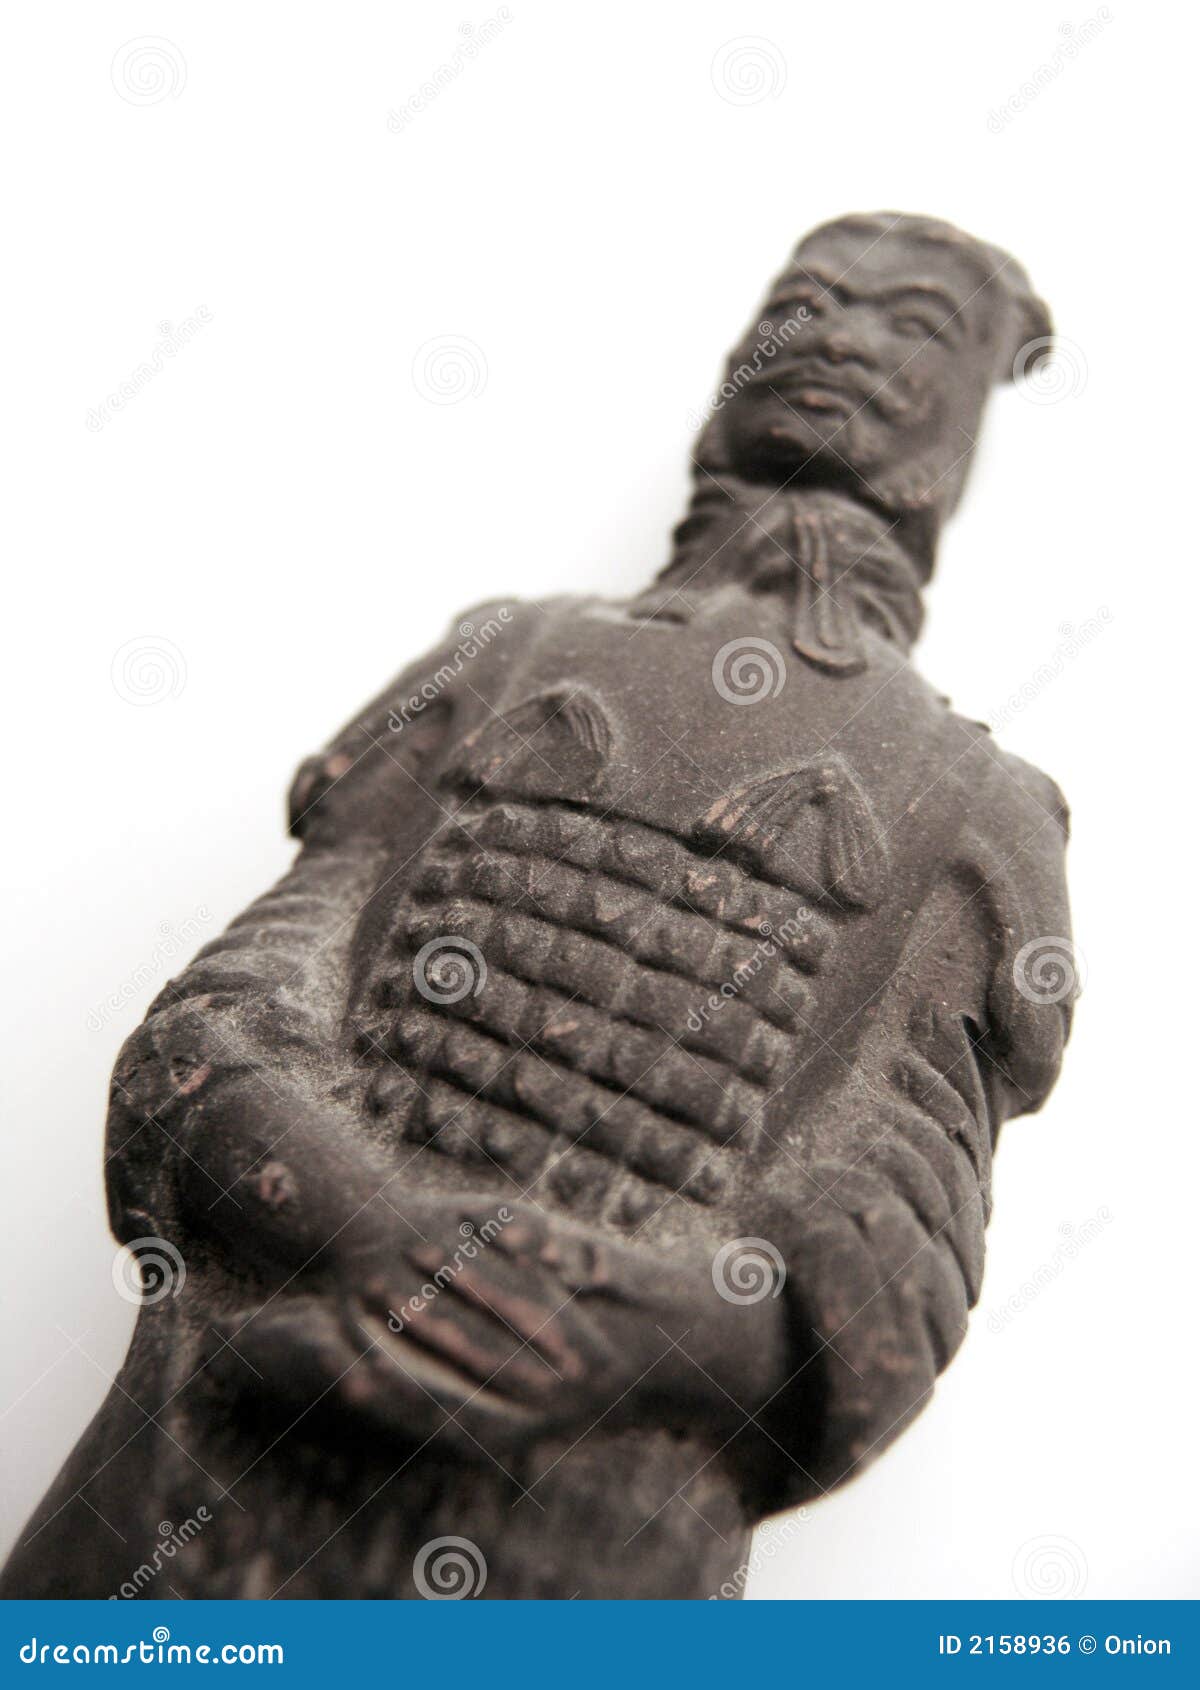 terracota warrior statue